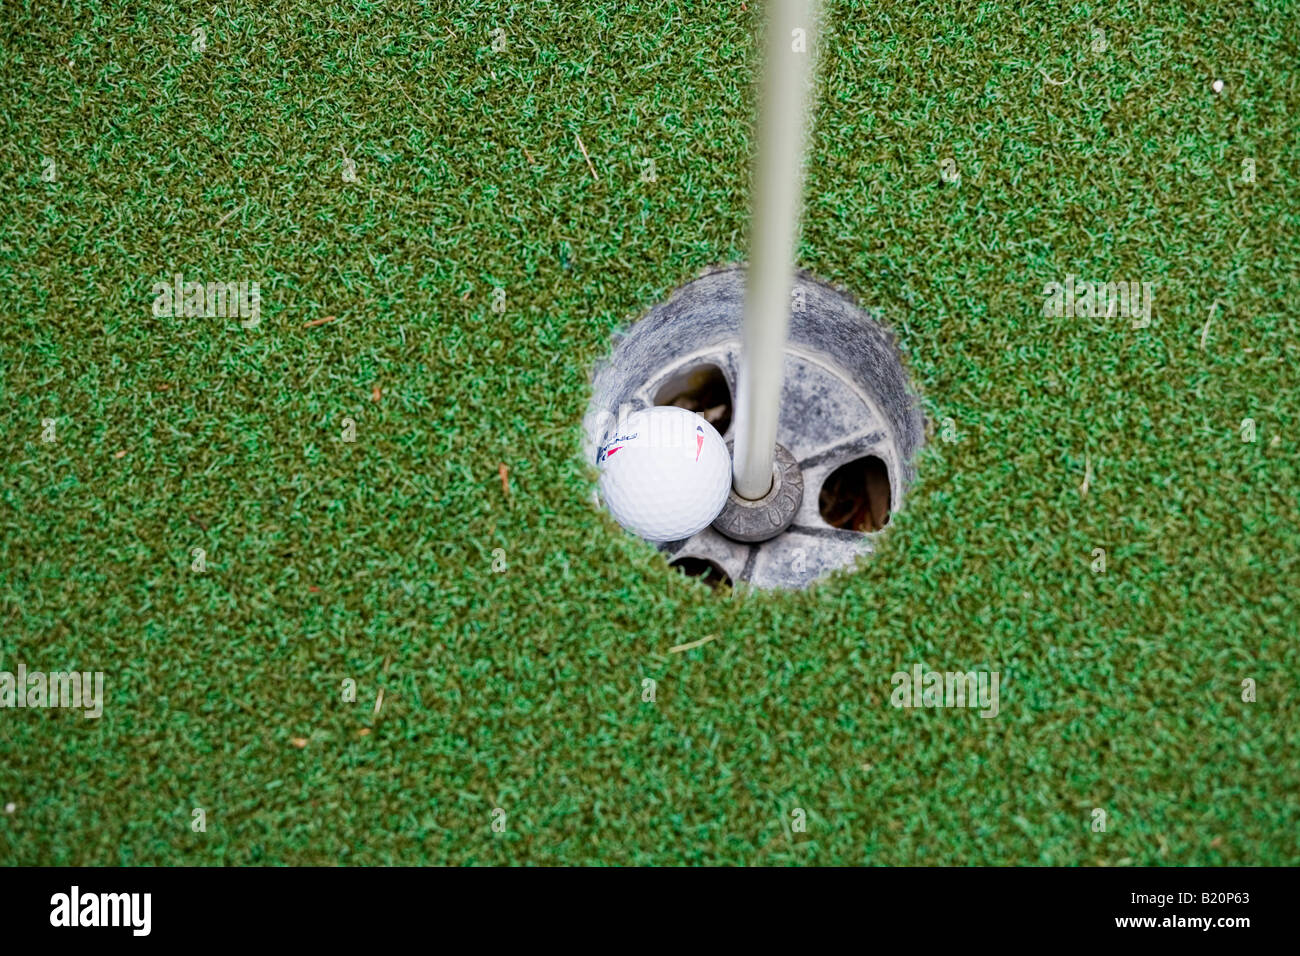 Dans le trou de balle de golf, mini-golf Banque D'Images